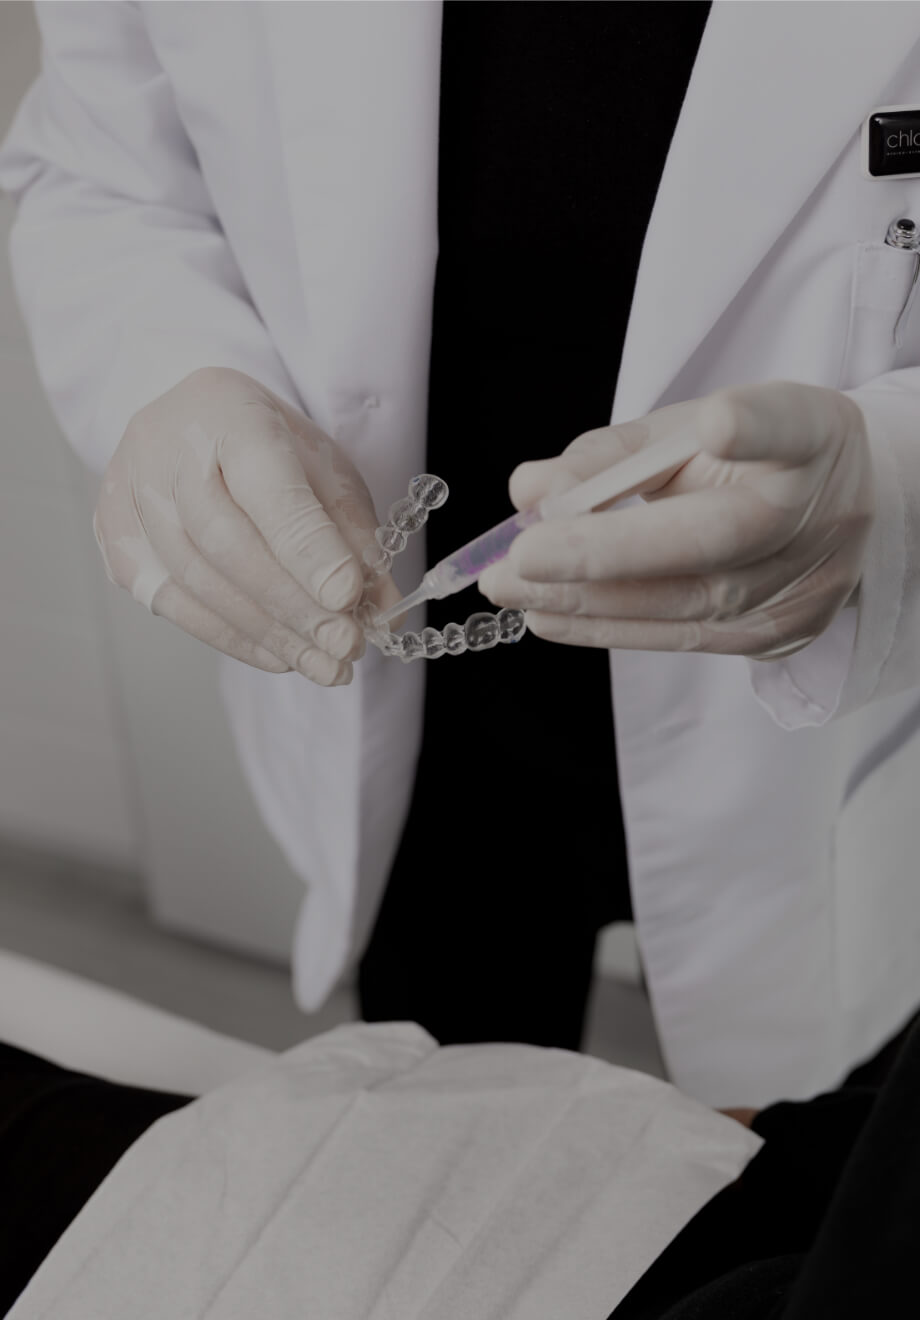 Le dentiste de la Clinique Chloé montrant à une patiente comment remplir les gouttières d'agent de blanchiment dentaire